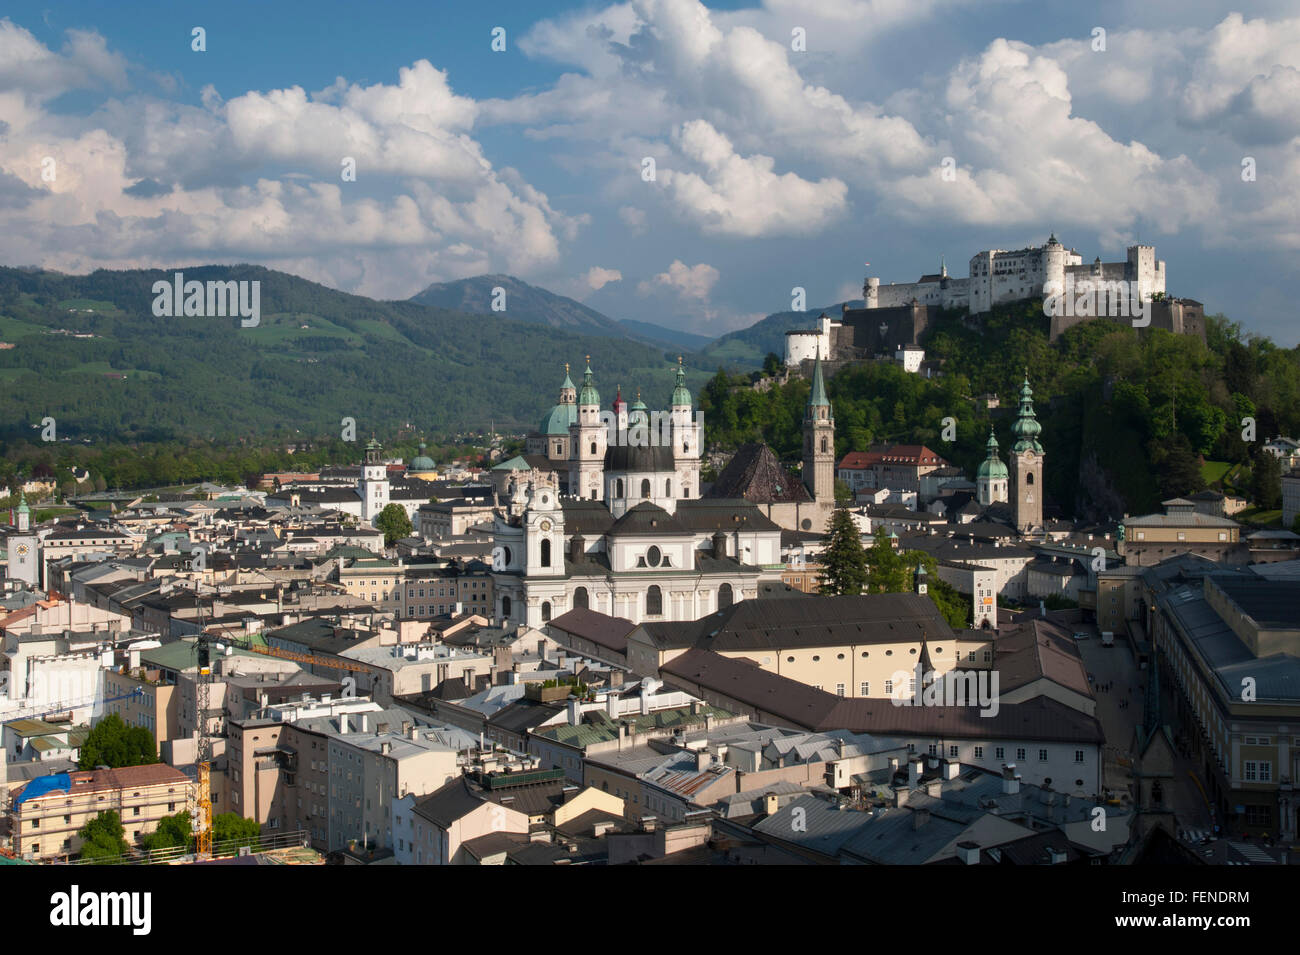 Con vistas al casco antiguo y de la Fortaleza de Hohensalzburg, el centro histórico de la ciudad de Salzburgo, un sitio del Patrimonio Mundial de la UNESCO, Foto de stock